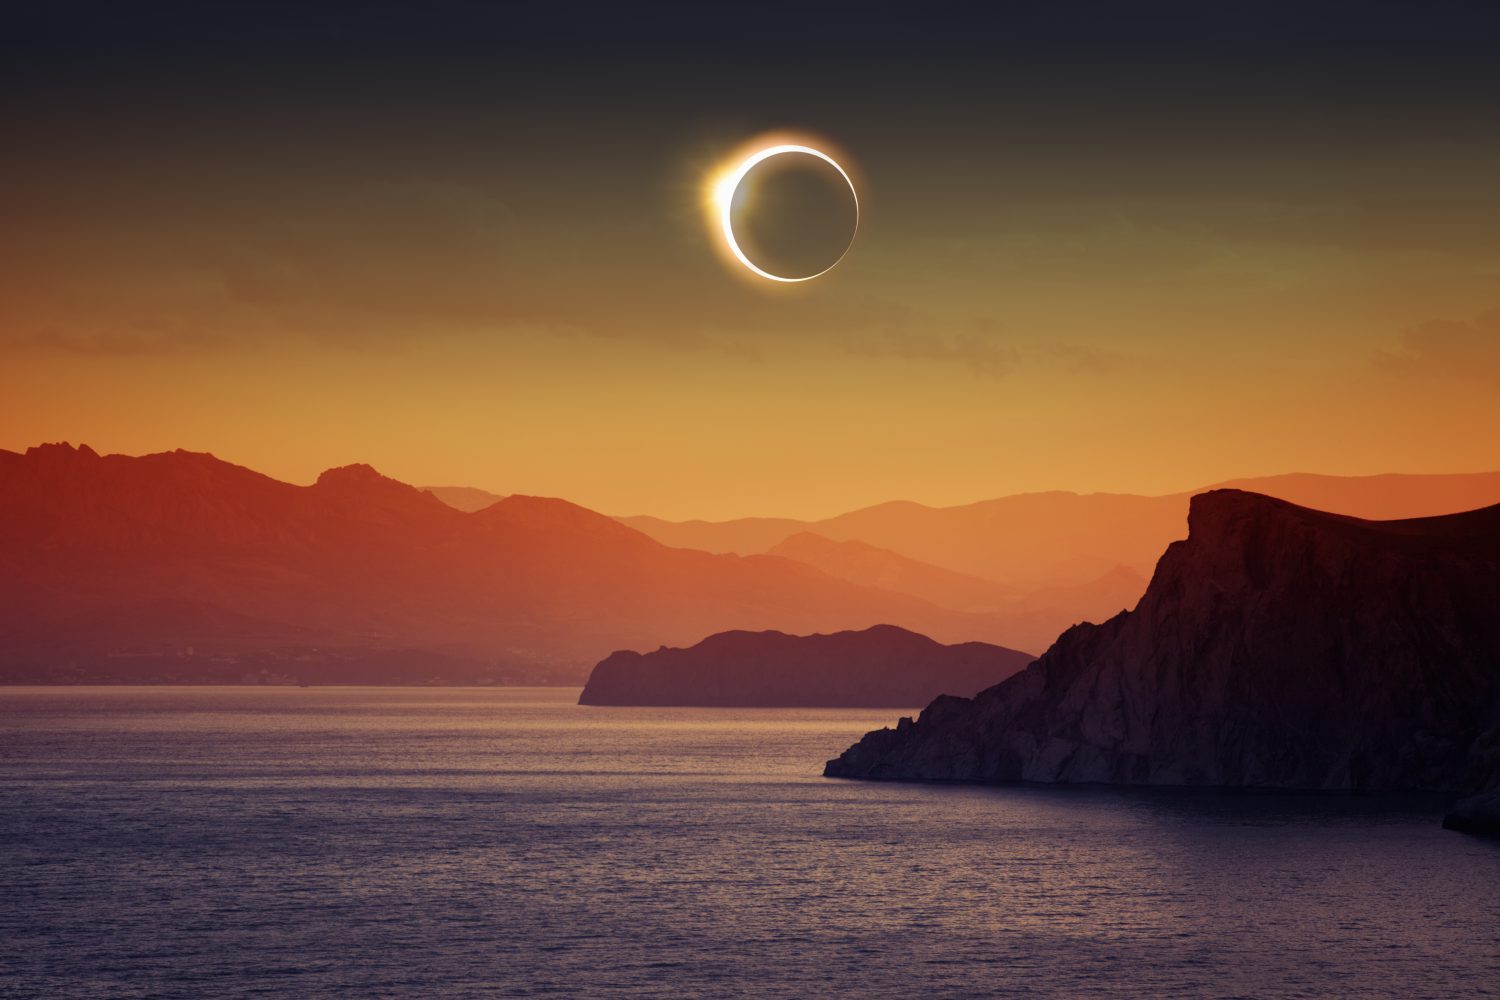 The next total solar eclipse won’t happen until 2026